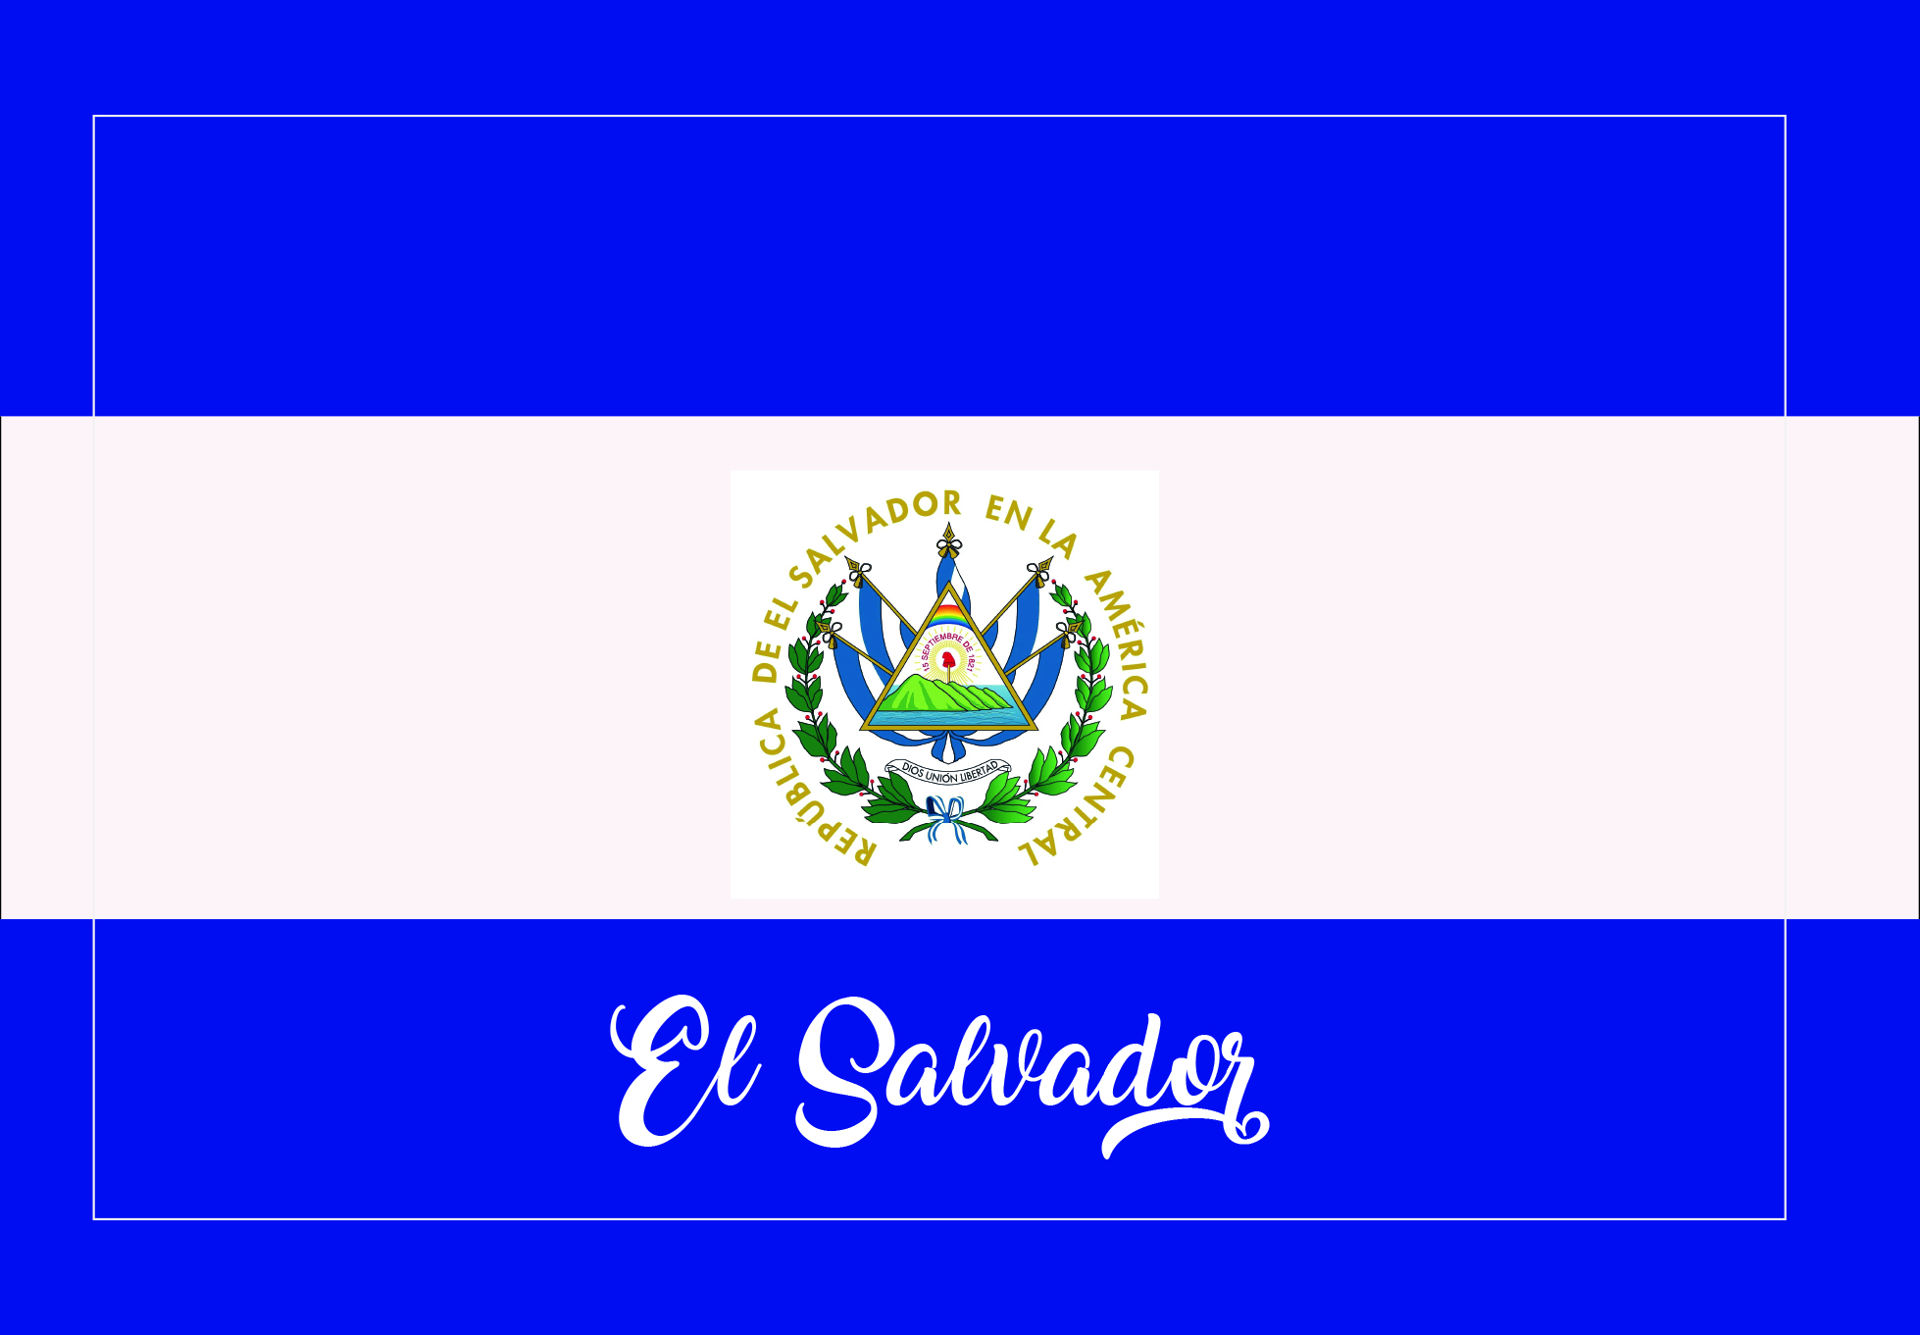 Magneto rectangular Bandera de El Salvador